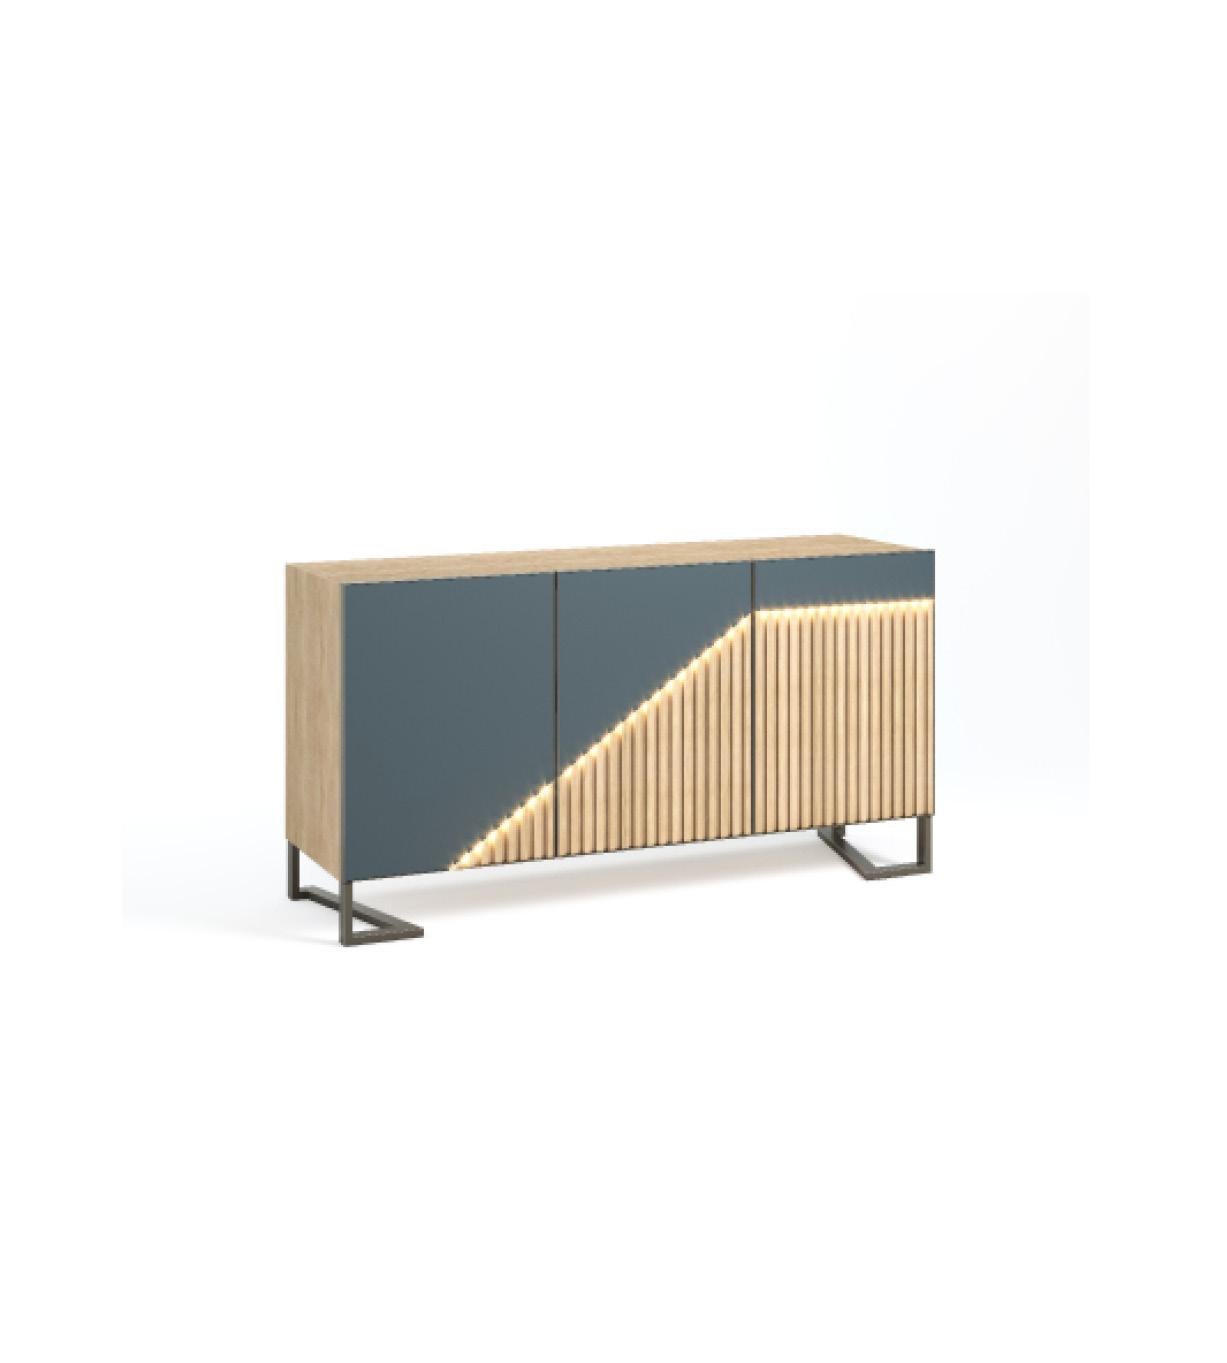 Dieses kleine Sideboard mit drei Türen ist eine perfekte Ergänzung für jedes klassische und exquisite Ambiente.